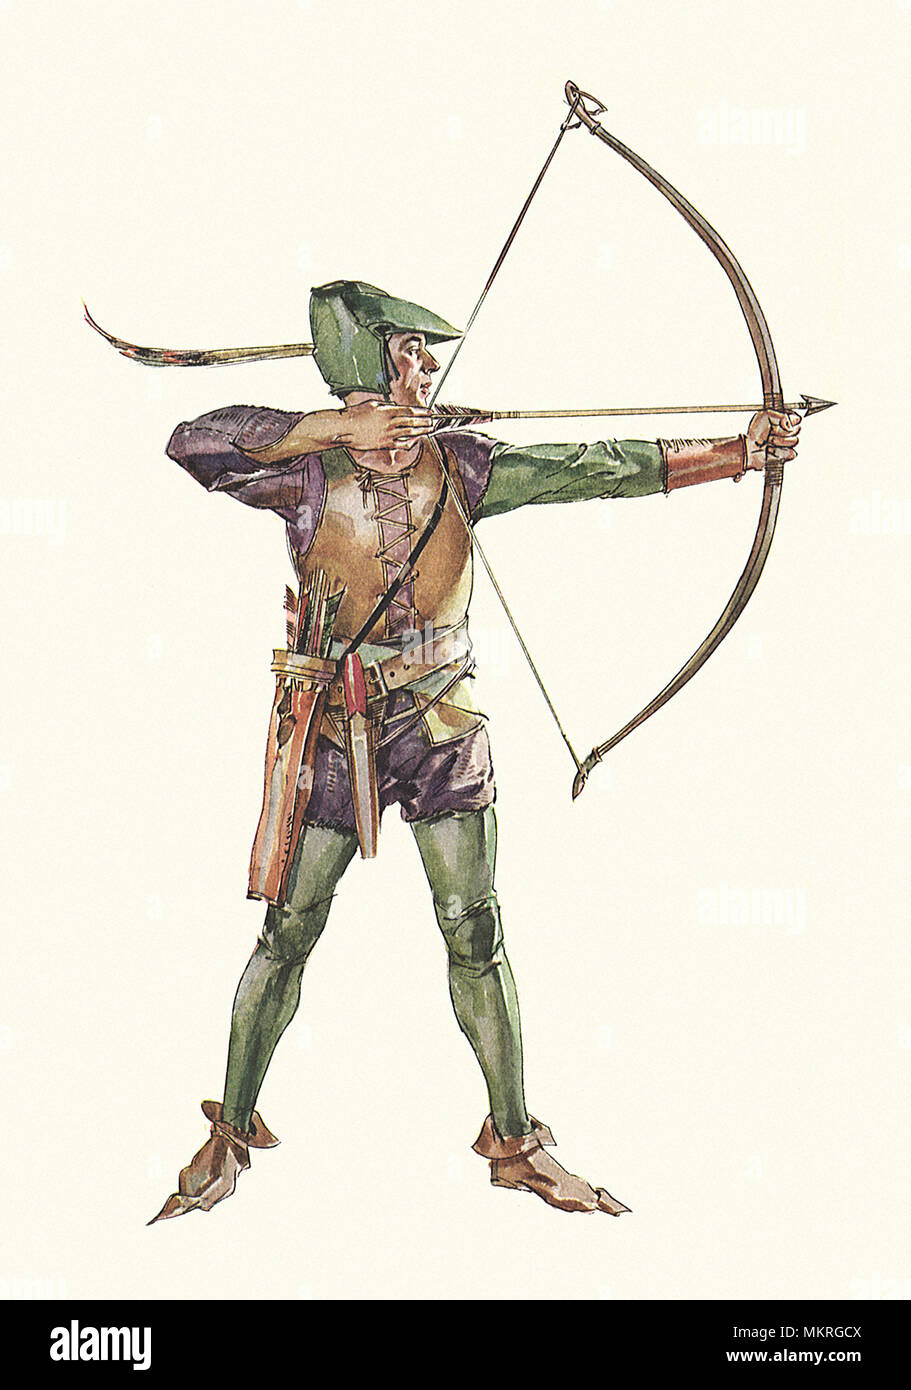 Robin Hood Tiro arciere arco e frecce Foto Stock